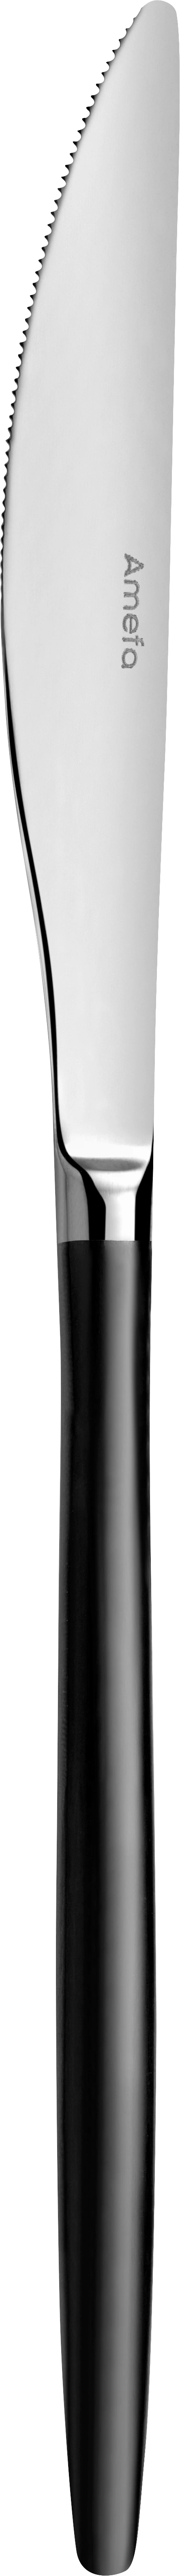 Amefa Soprano bordkniv med sort skaft, 23 cm